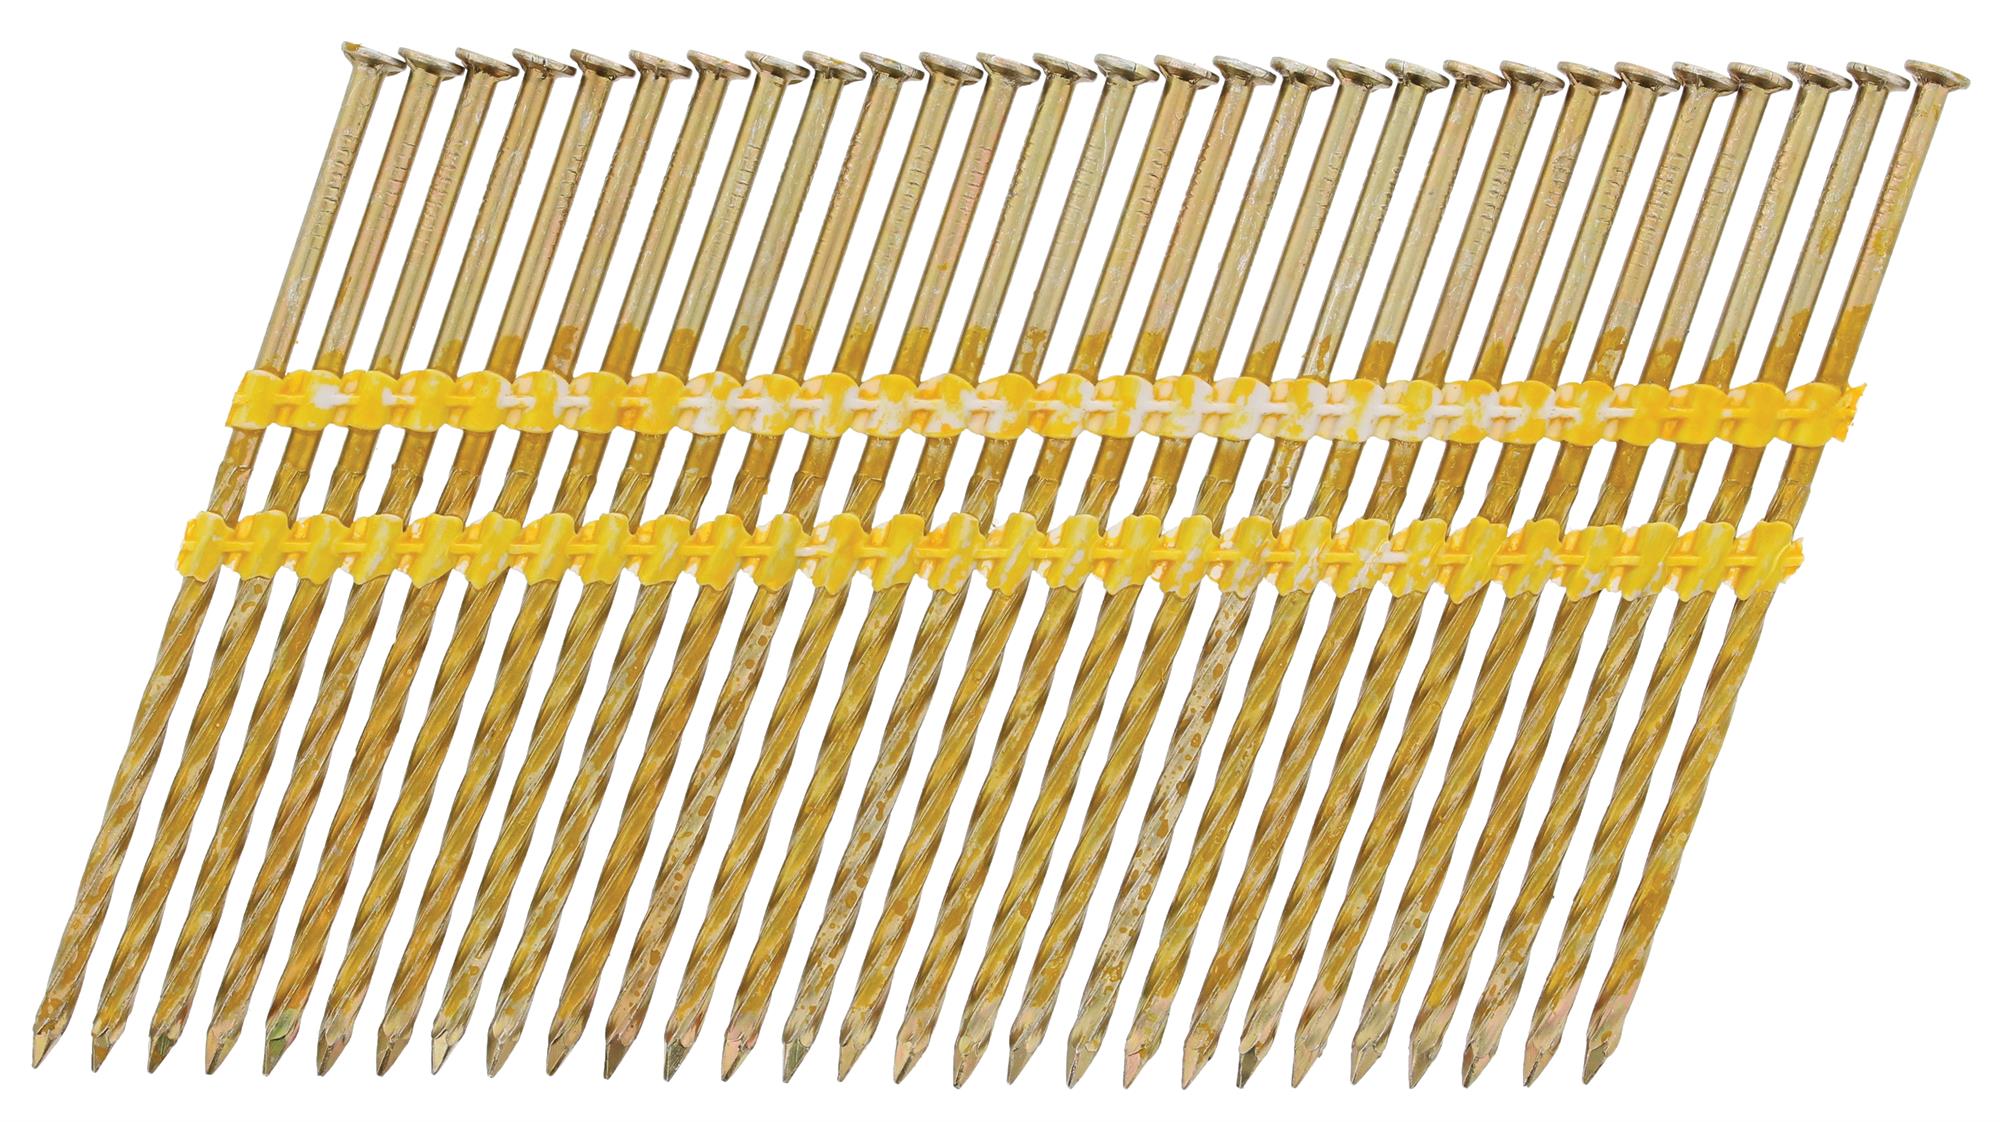 Hřebíky Paslode 21° šroubovací závit 2,8×90 mm 3 000 ks